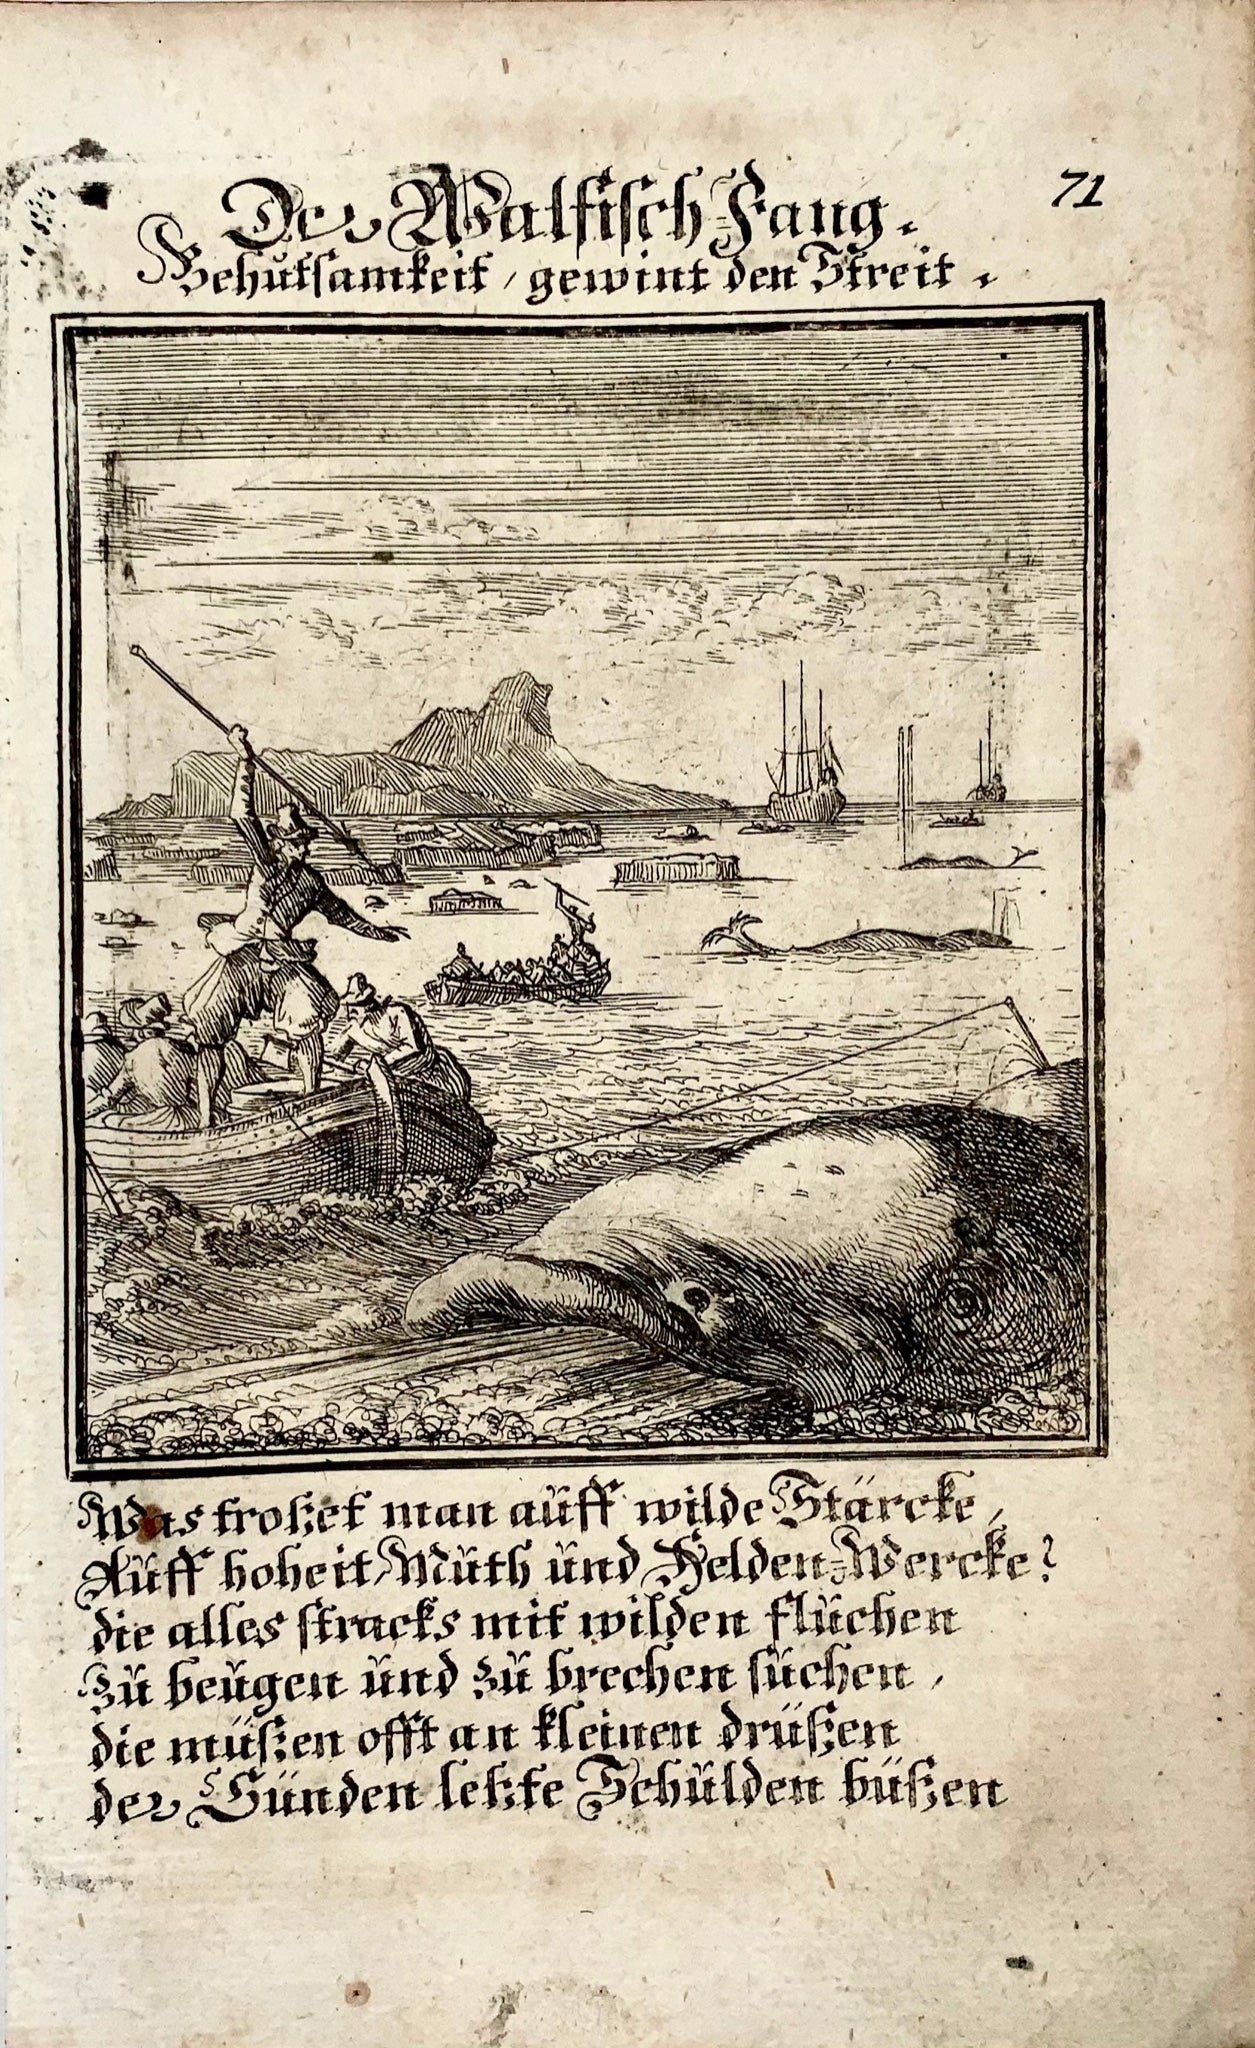 1711 Caspar Luyken, Whaling, “Der Walfisch Fang”, copper engraving, agriculture